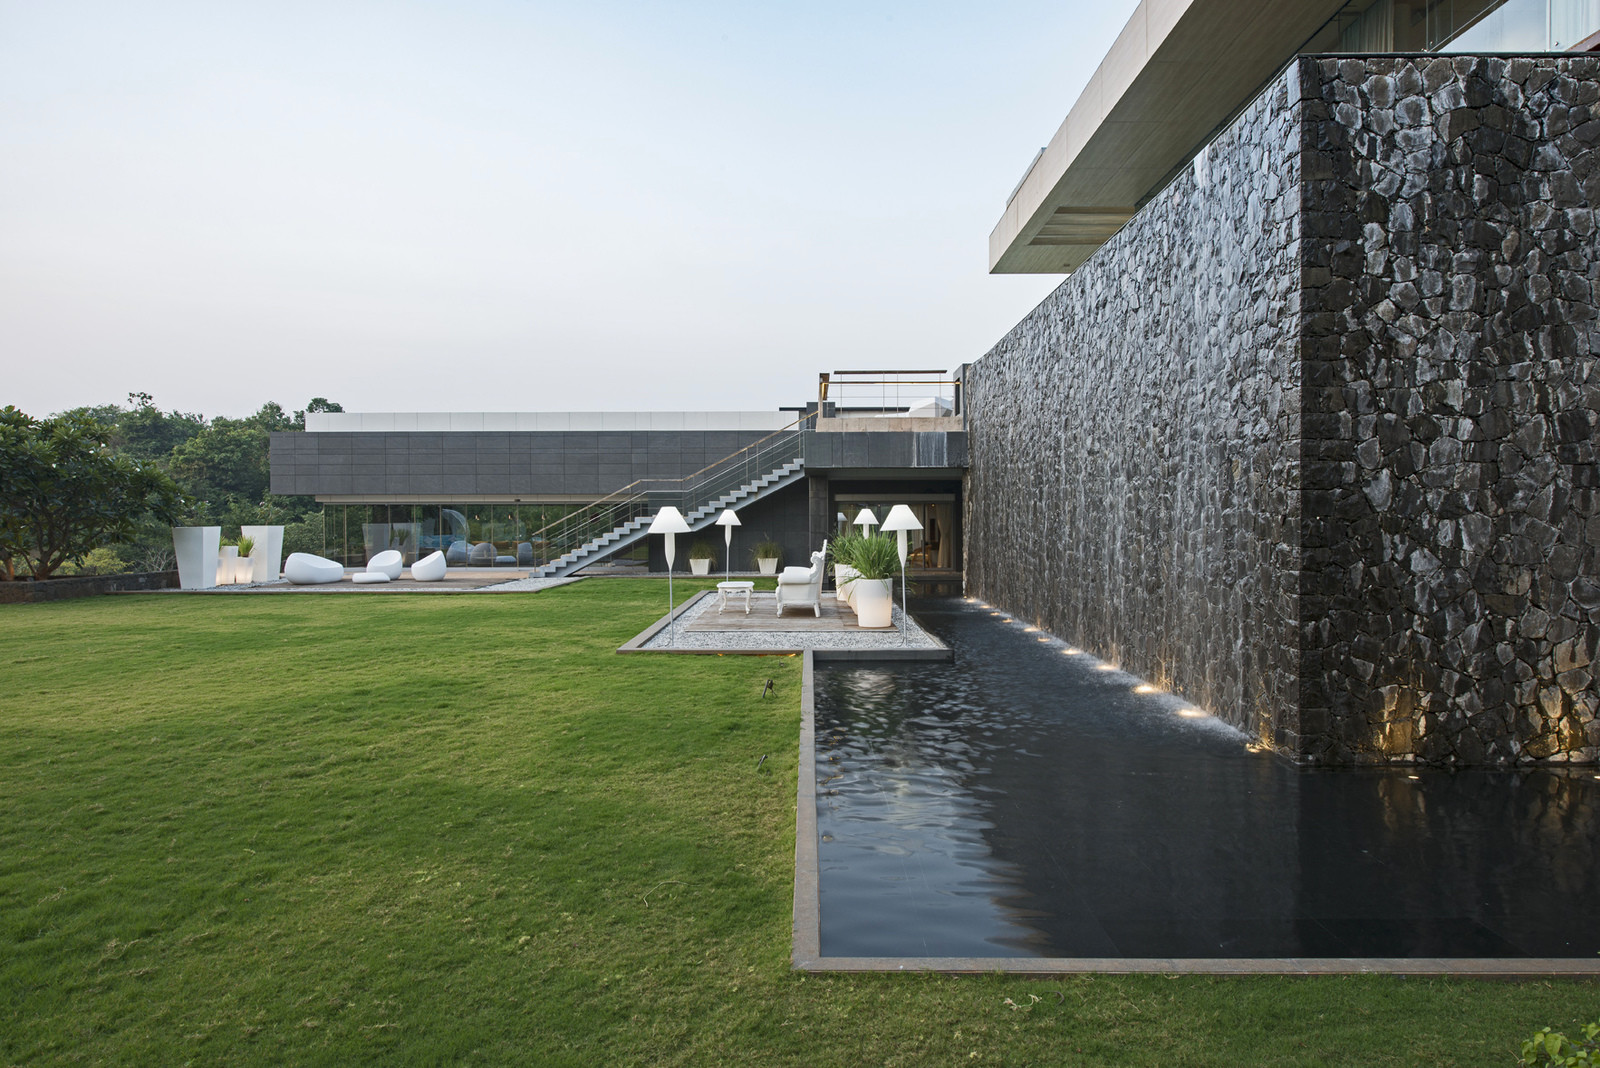  Luxury villa in India